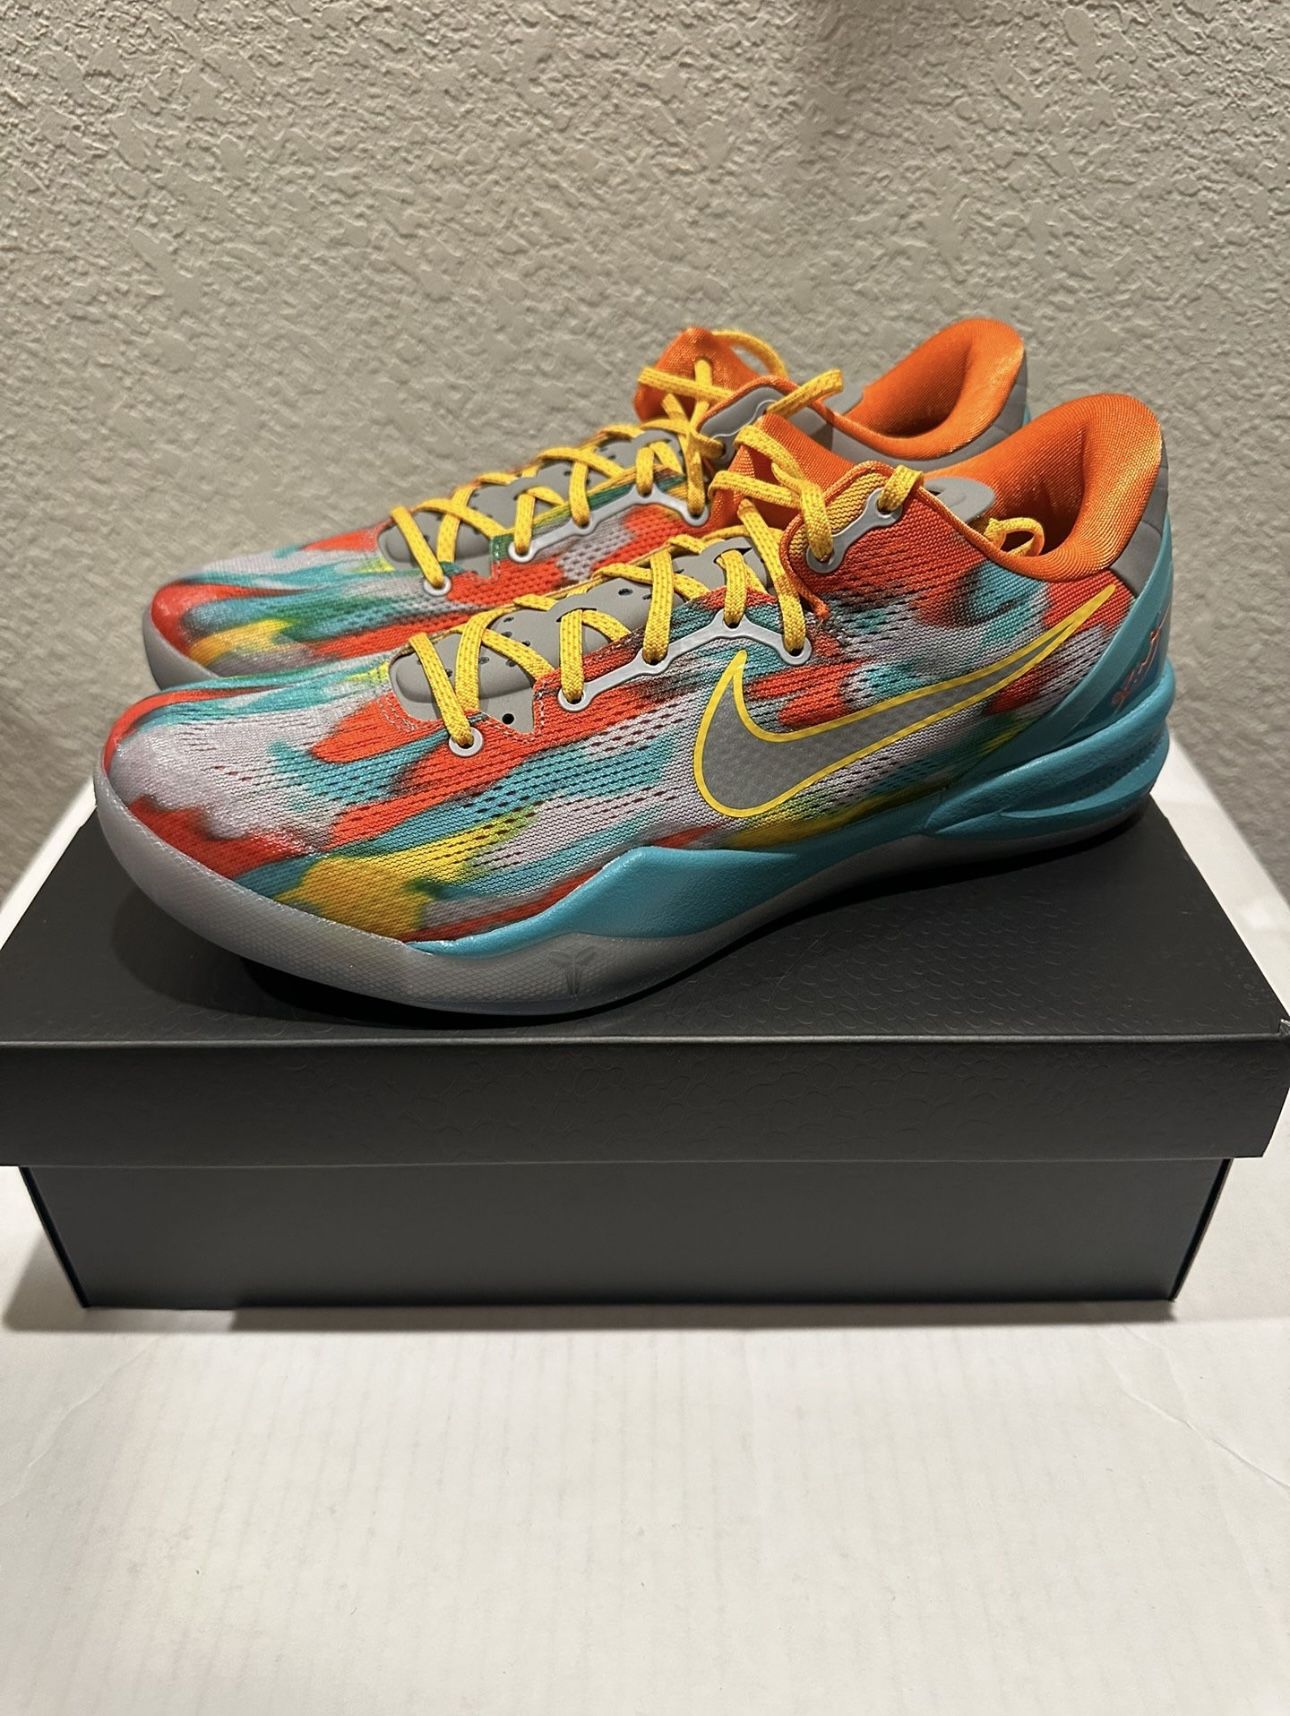 Nike Kobe 8 “Venice Beach” Size 12